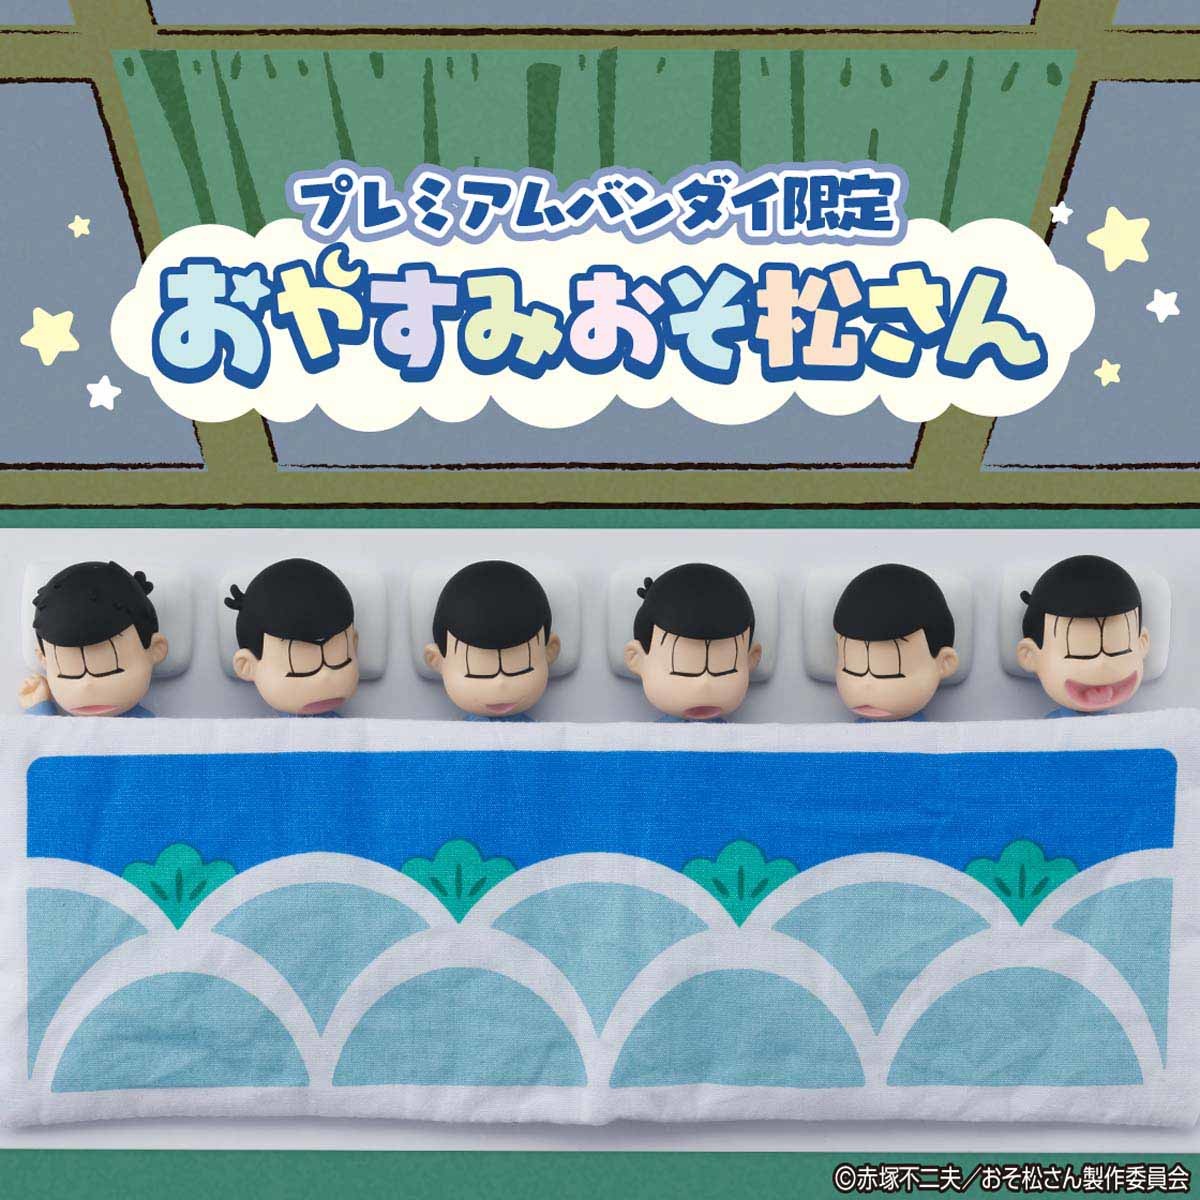 おそ松さん パジャマ姿で眠る6つ子のフィギュアが登場 松模様の布団と枕がセット 順番も入れ替え可能 アキバ総研